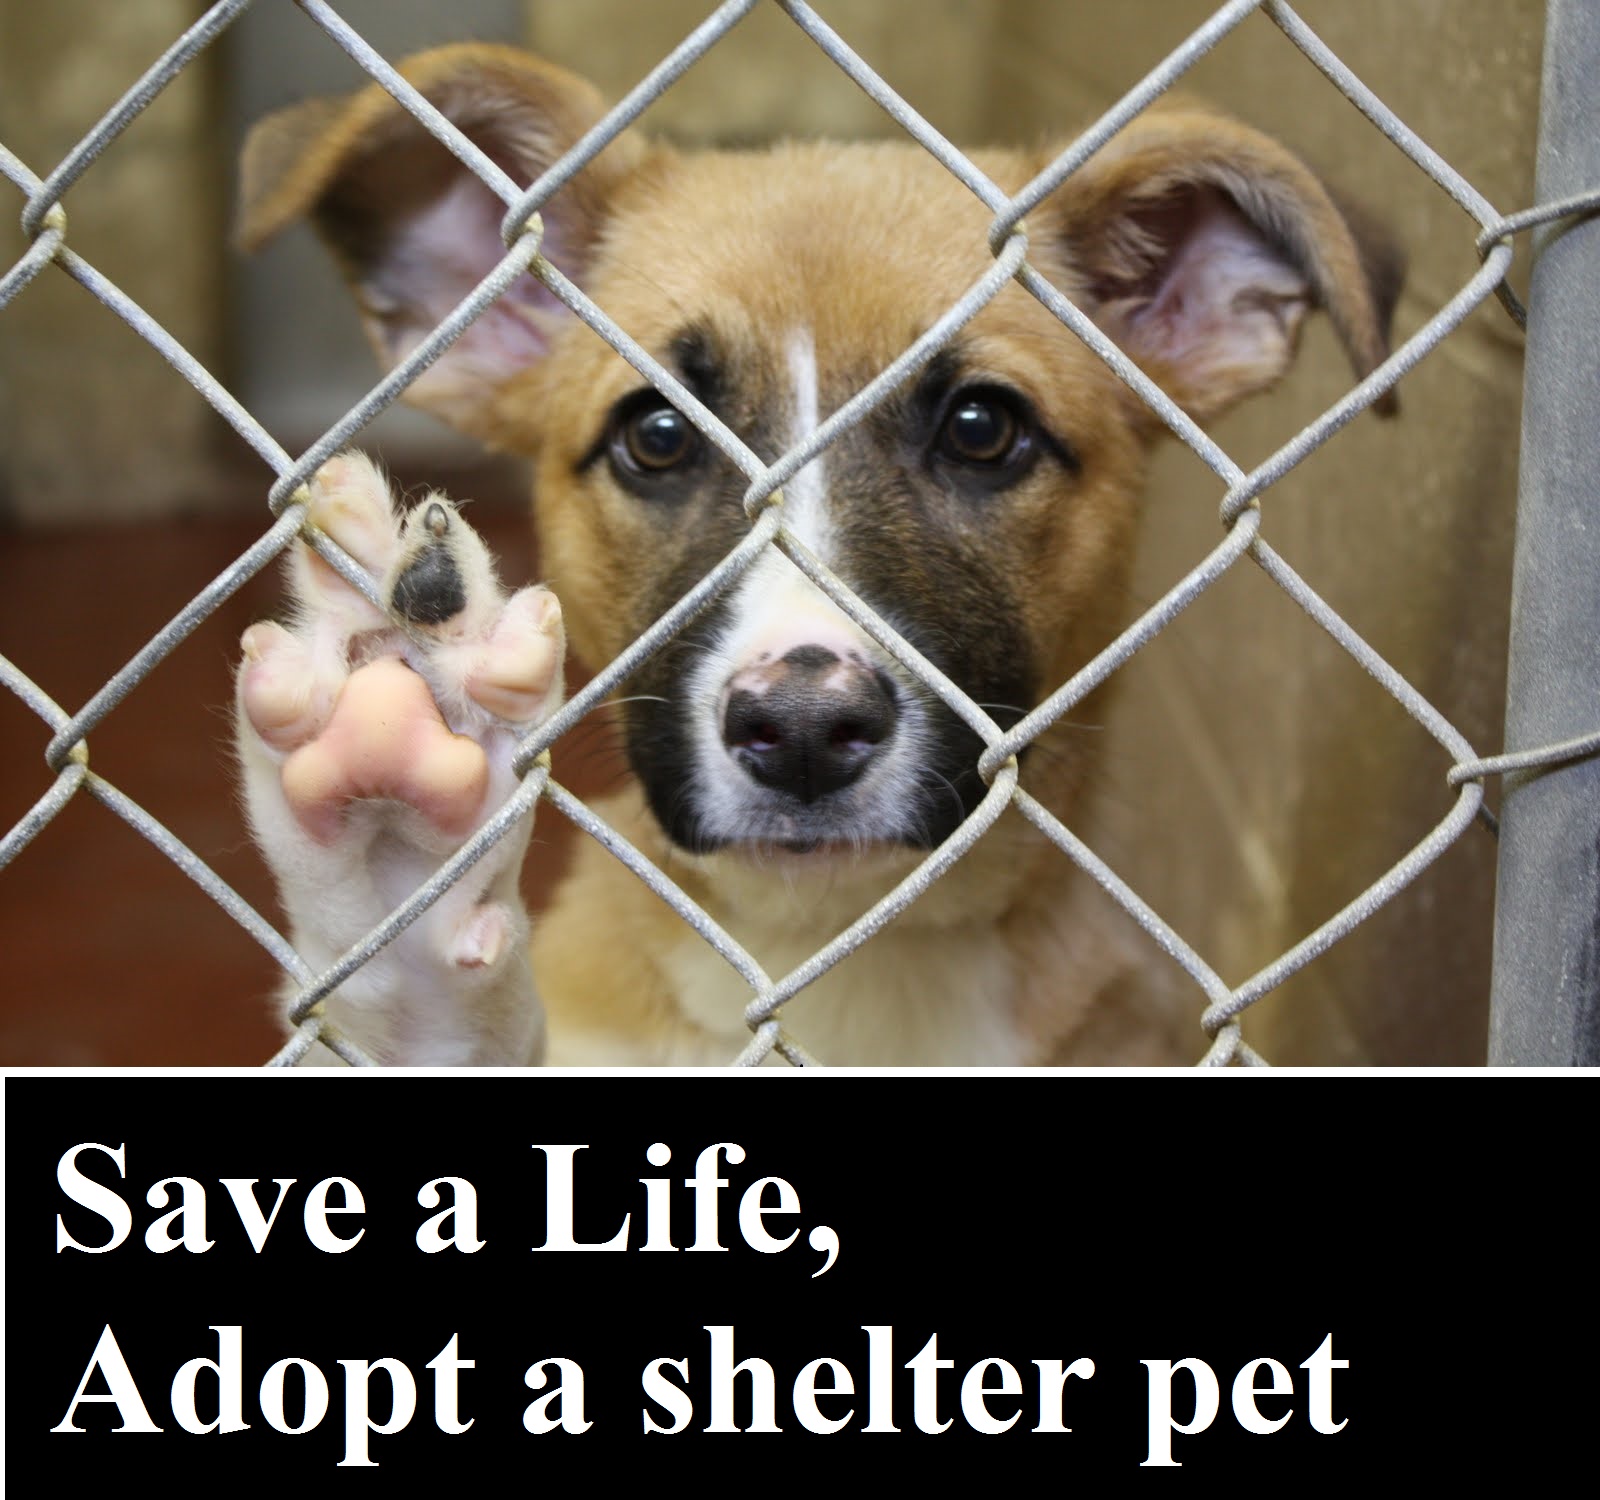 Save a Life, Adopt a shelter pet